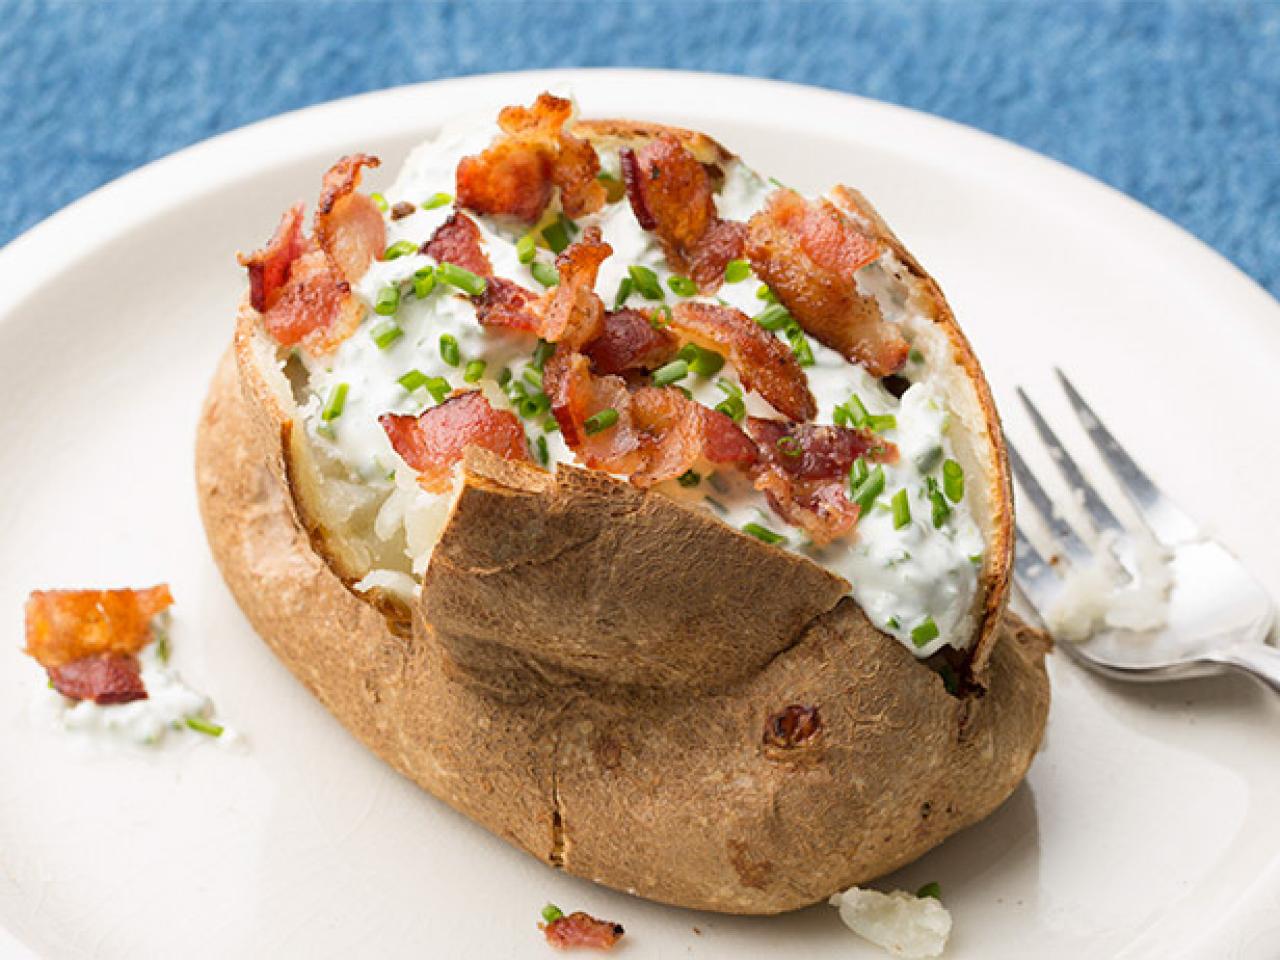 Печеный мэш. Baked Potato. Печеный картофель. Запеченный картофель с начинкой. Потата блюдо крошка картошка.